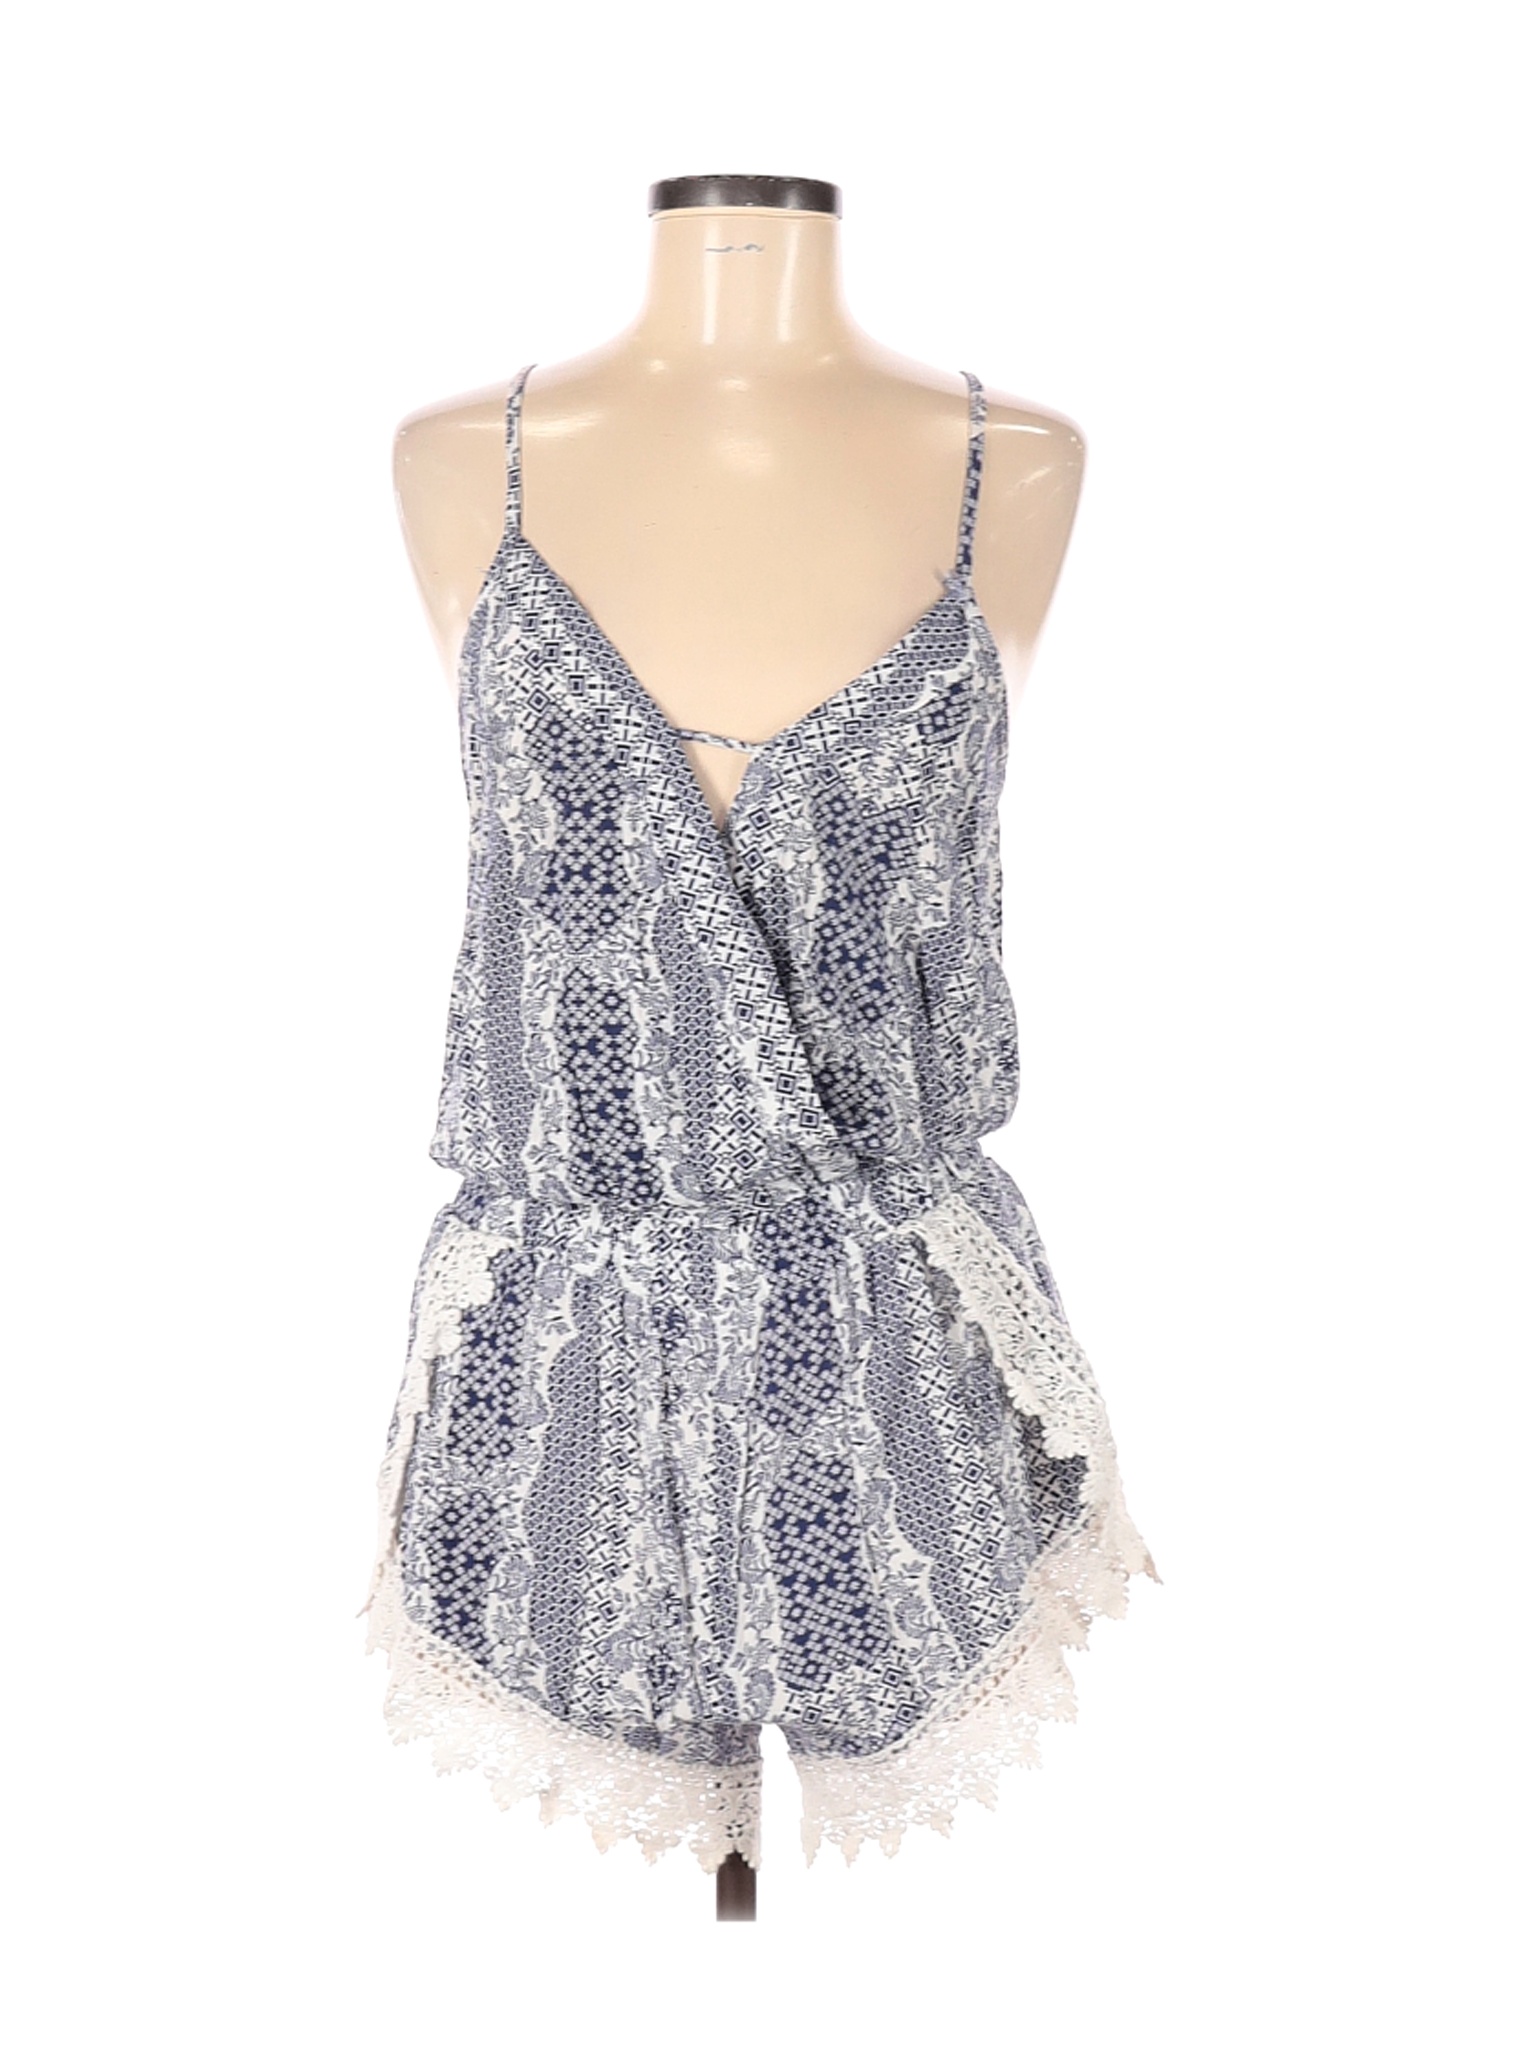 Ocean Drive Clothing Co. Women Blue Romper M | eBay